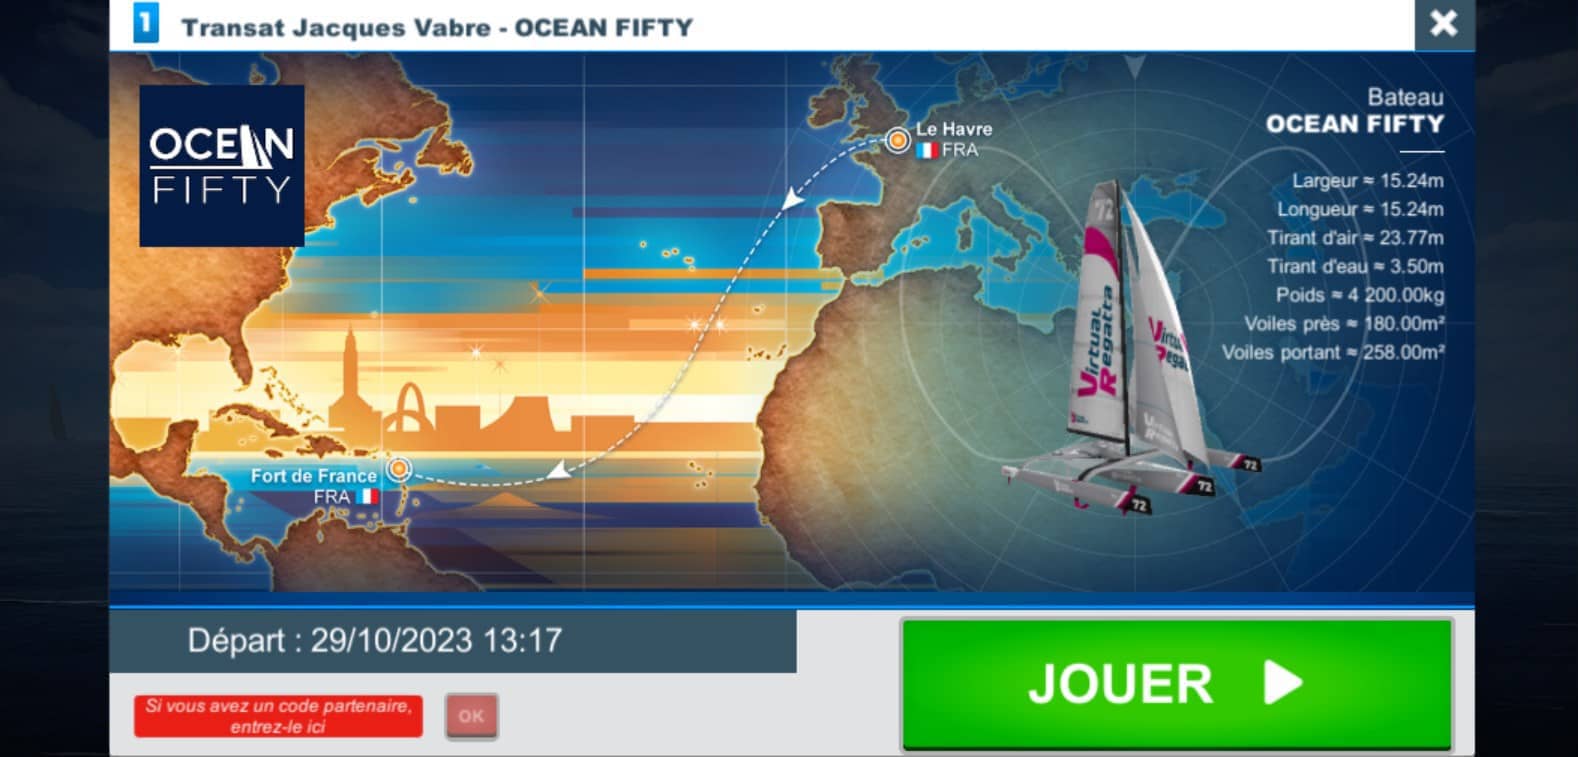 Transat Jacques Vabre 2023 : la course virtuelle sur Internet avec Virtual Regatta